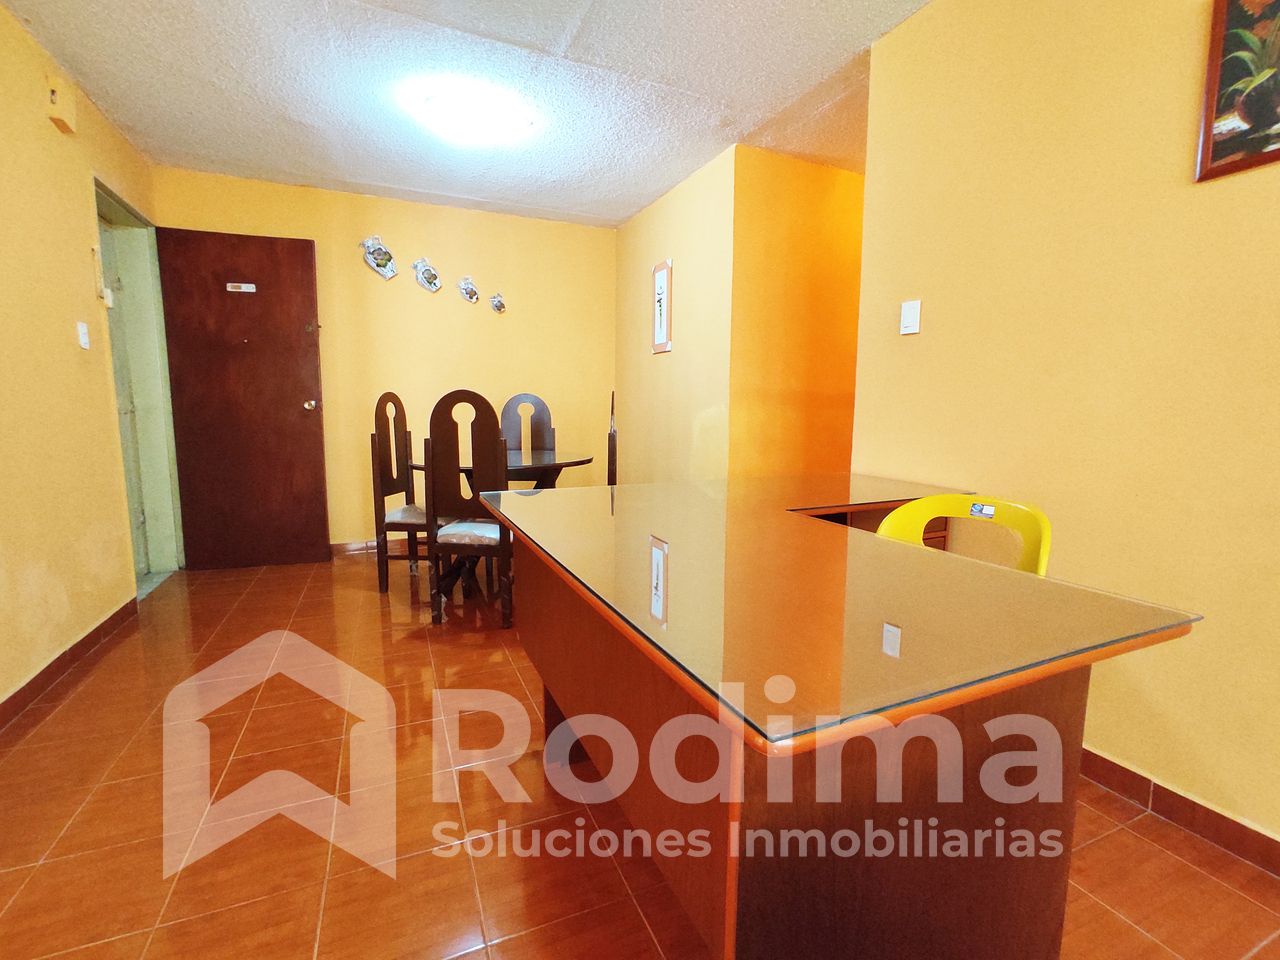 Apartamento en alquiler Base Aragua, Maracay, conectado a pozo